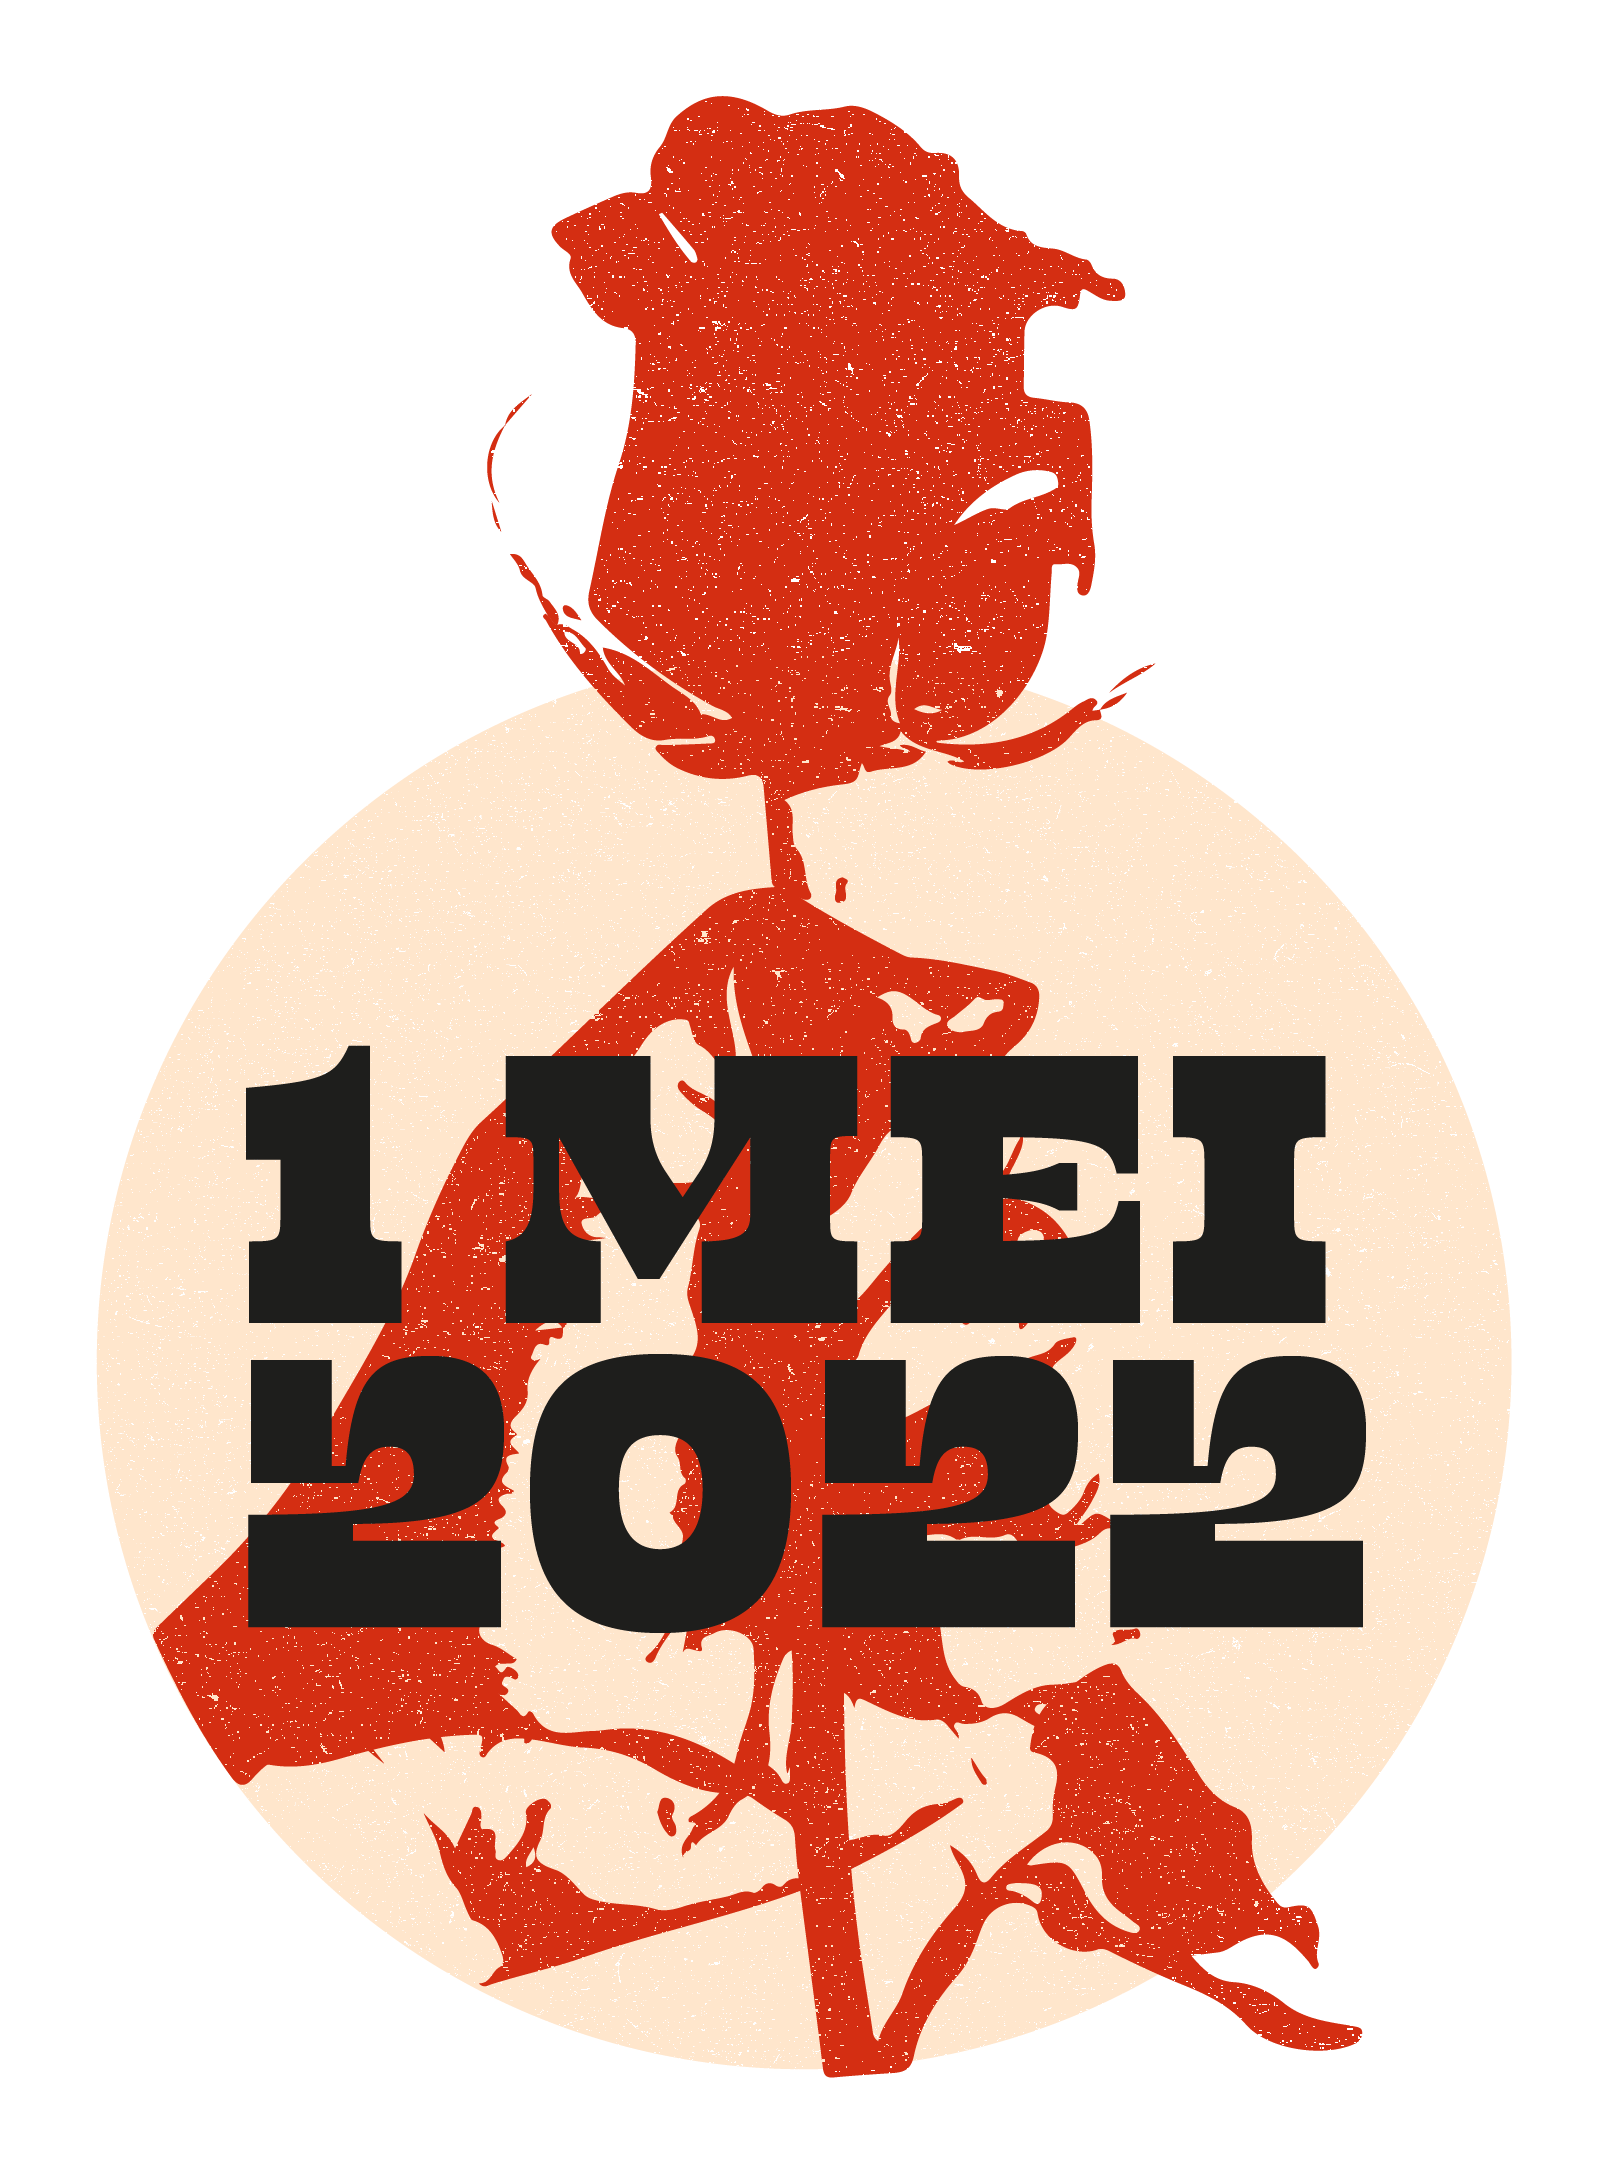 logo 1 mei 2022